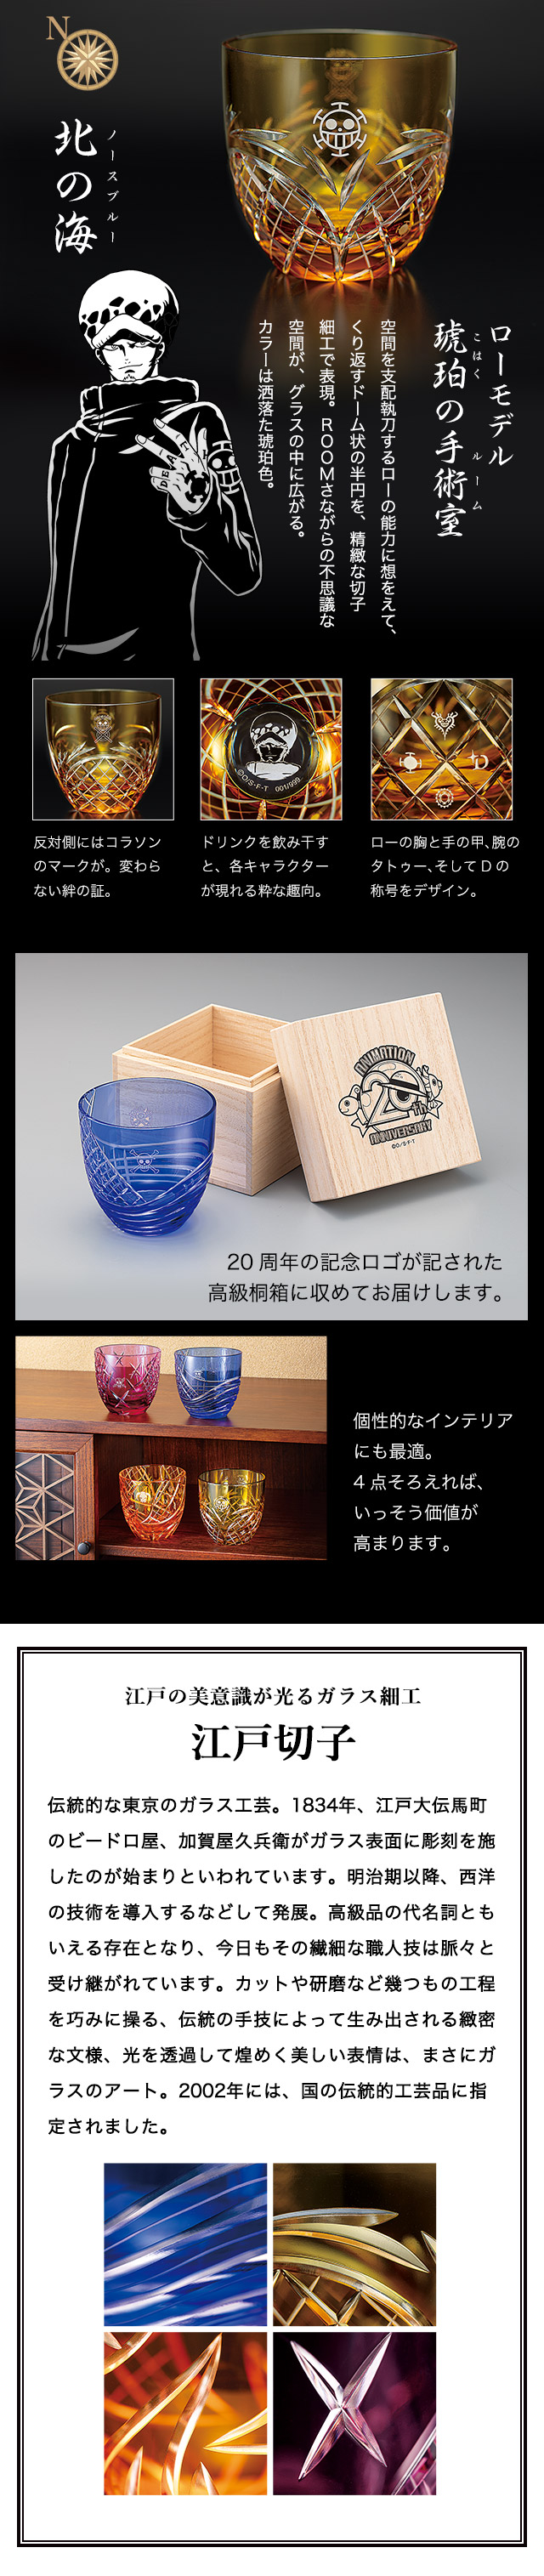 ローモデル 琥珀の手術室 空間を支配執刀するローの能力に想をえて、くり返すドーム状の半円を、精緻な切子細工で表現。ROOMさながらの不思議な空間が、グラスの中に広がる。カラーは洒落た琥珀色。 江戸の美意識が光るガラス細工 江戸切子 伝統的な東京のガラス工芸。1834年、江戸大伝馬町のビードロ屋、加賀屋久兵衛がガラス表面に彫刻を施したのが始まりといわれています。明治期以降、西洋の技術を導入するなどして発展。高級品の代名詞ともいえる存在となり、今日もその繊細な職人技は脈々と受け継がれています。カットや研磨など幾つもの工程を巧みに操る、伝統の手技によって生み出される緻密な文様、光を透過して煌めく美しい表情は、まさにガラスのアート。2002年には、国の伝統的工芸品に指定されました。